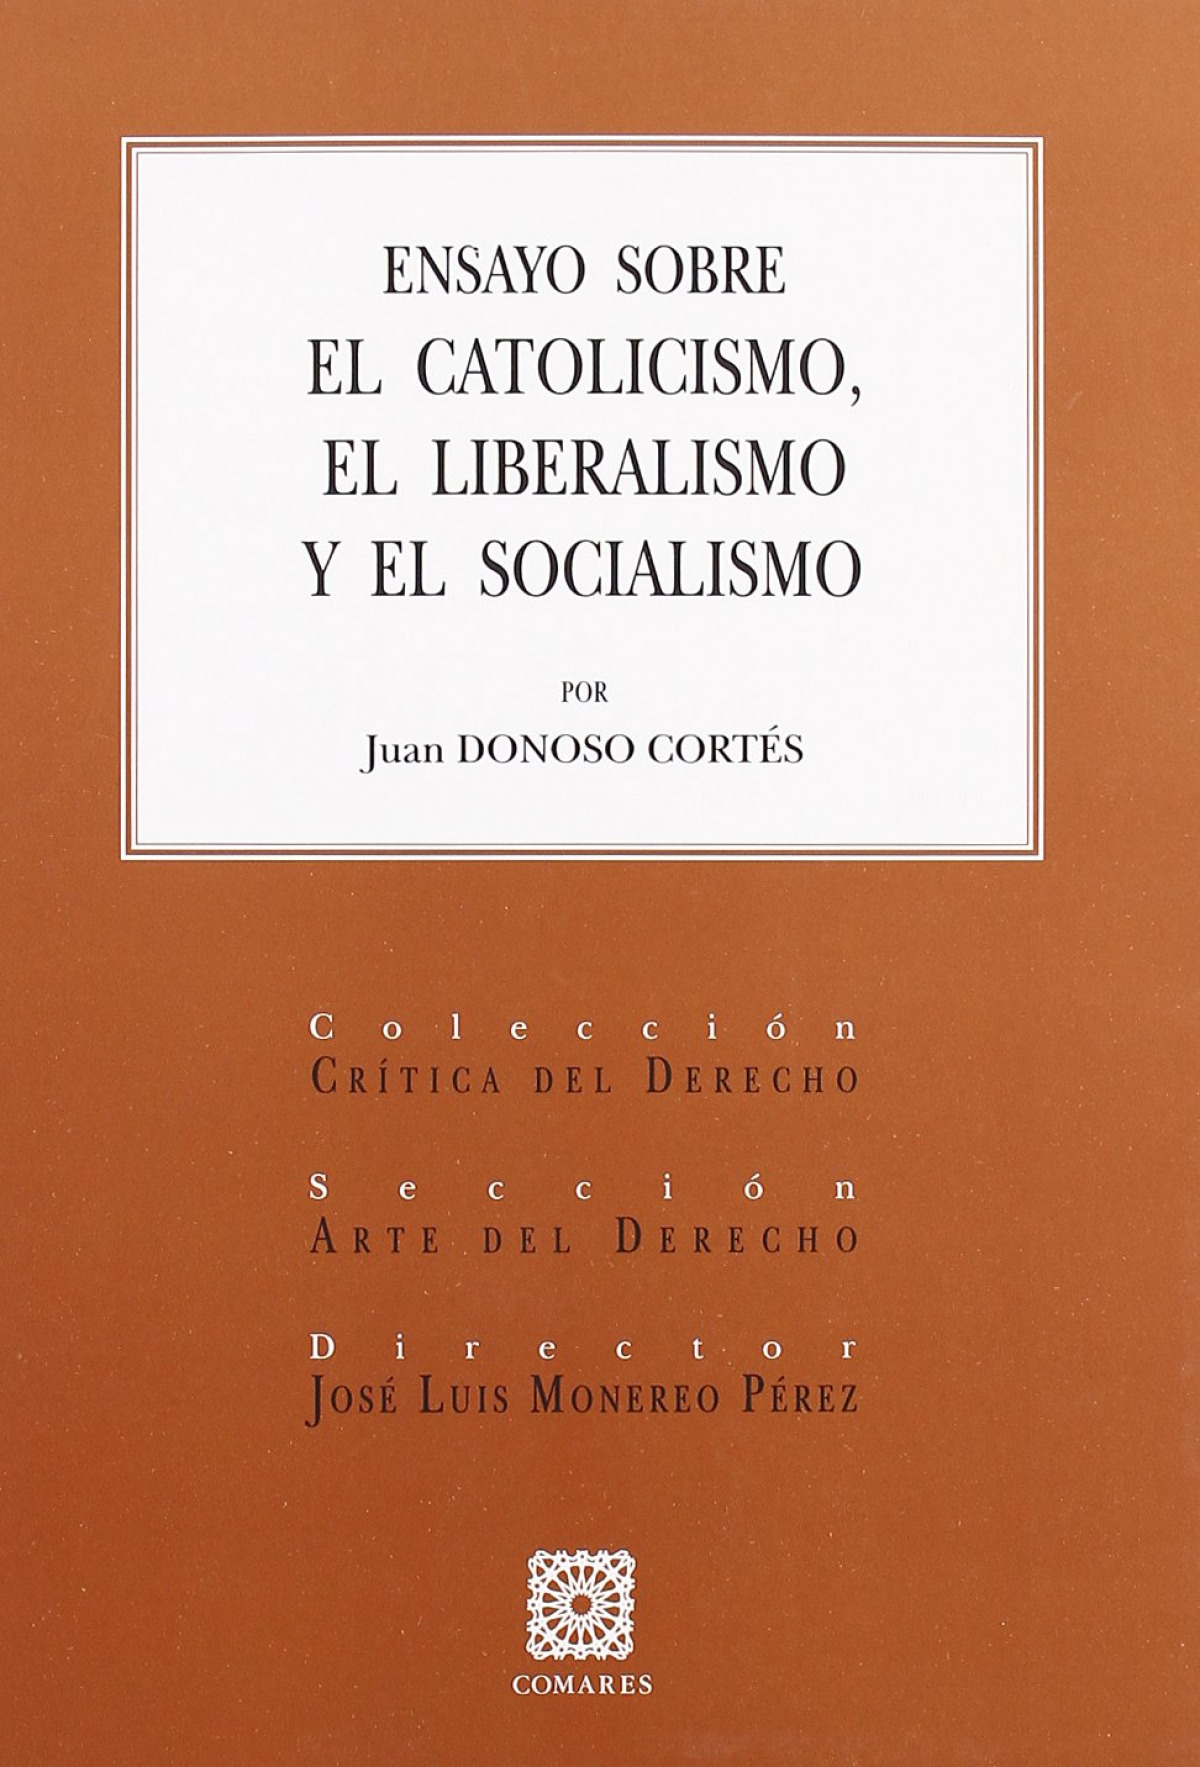 Ensayo sobre el catolicismo, el liberalismo y el socialismo - Donoso Cortés, Juan